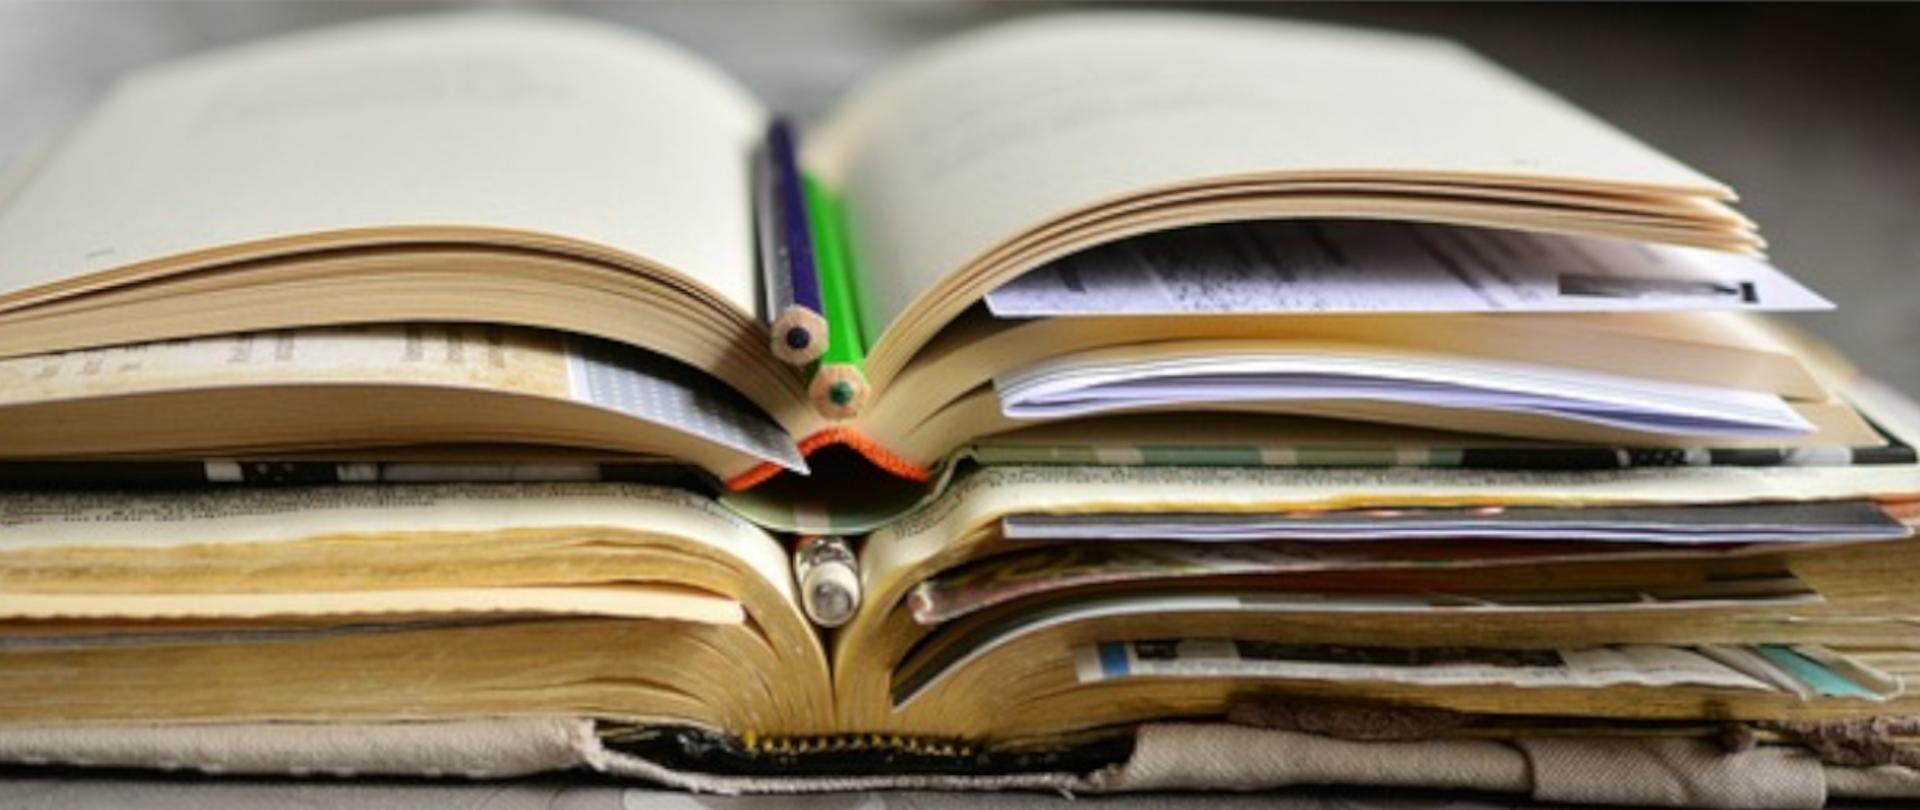 Fotografia przedstawiająca stertę otwartych książek poprzekładaną ołówkami i kartkami z notatkami.